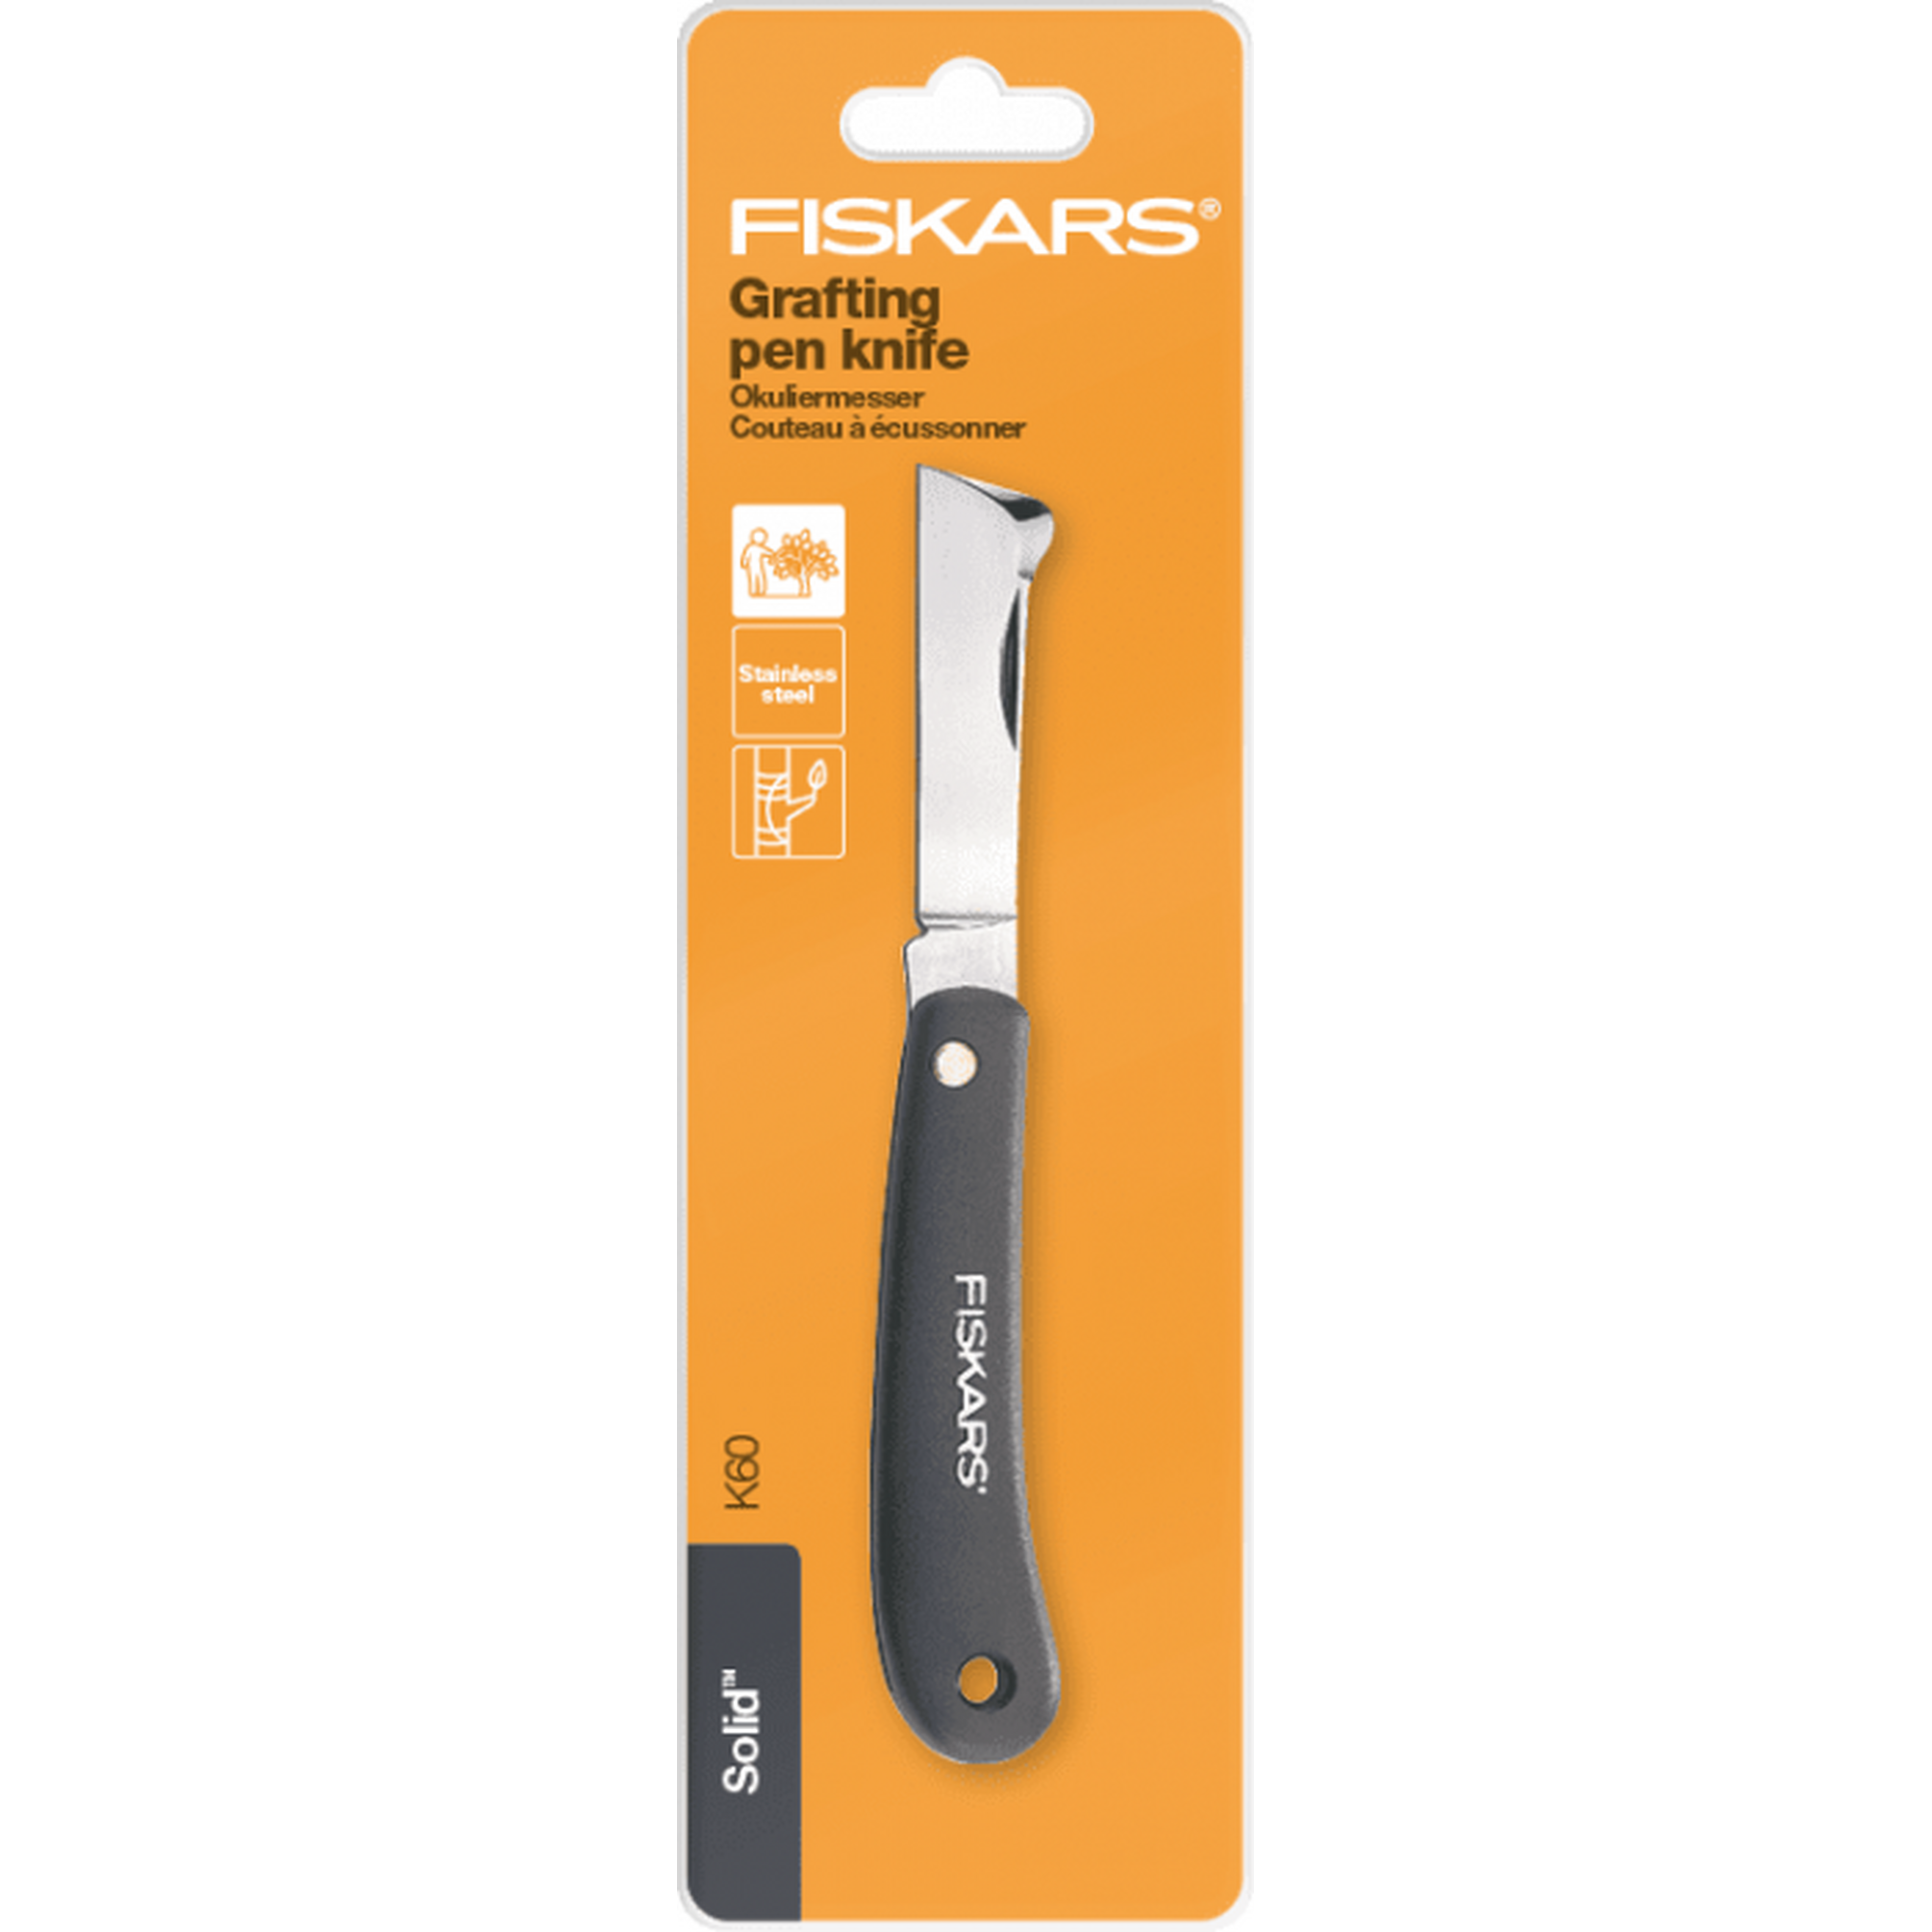 Нож садовый Fiskars для прививок K60 1001625 нож садовый плоский для прививок 125900 fiskars 1001625